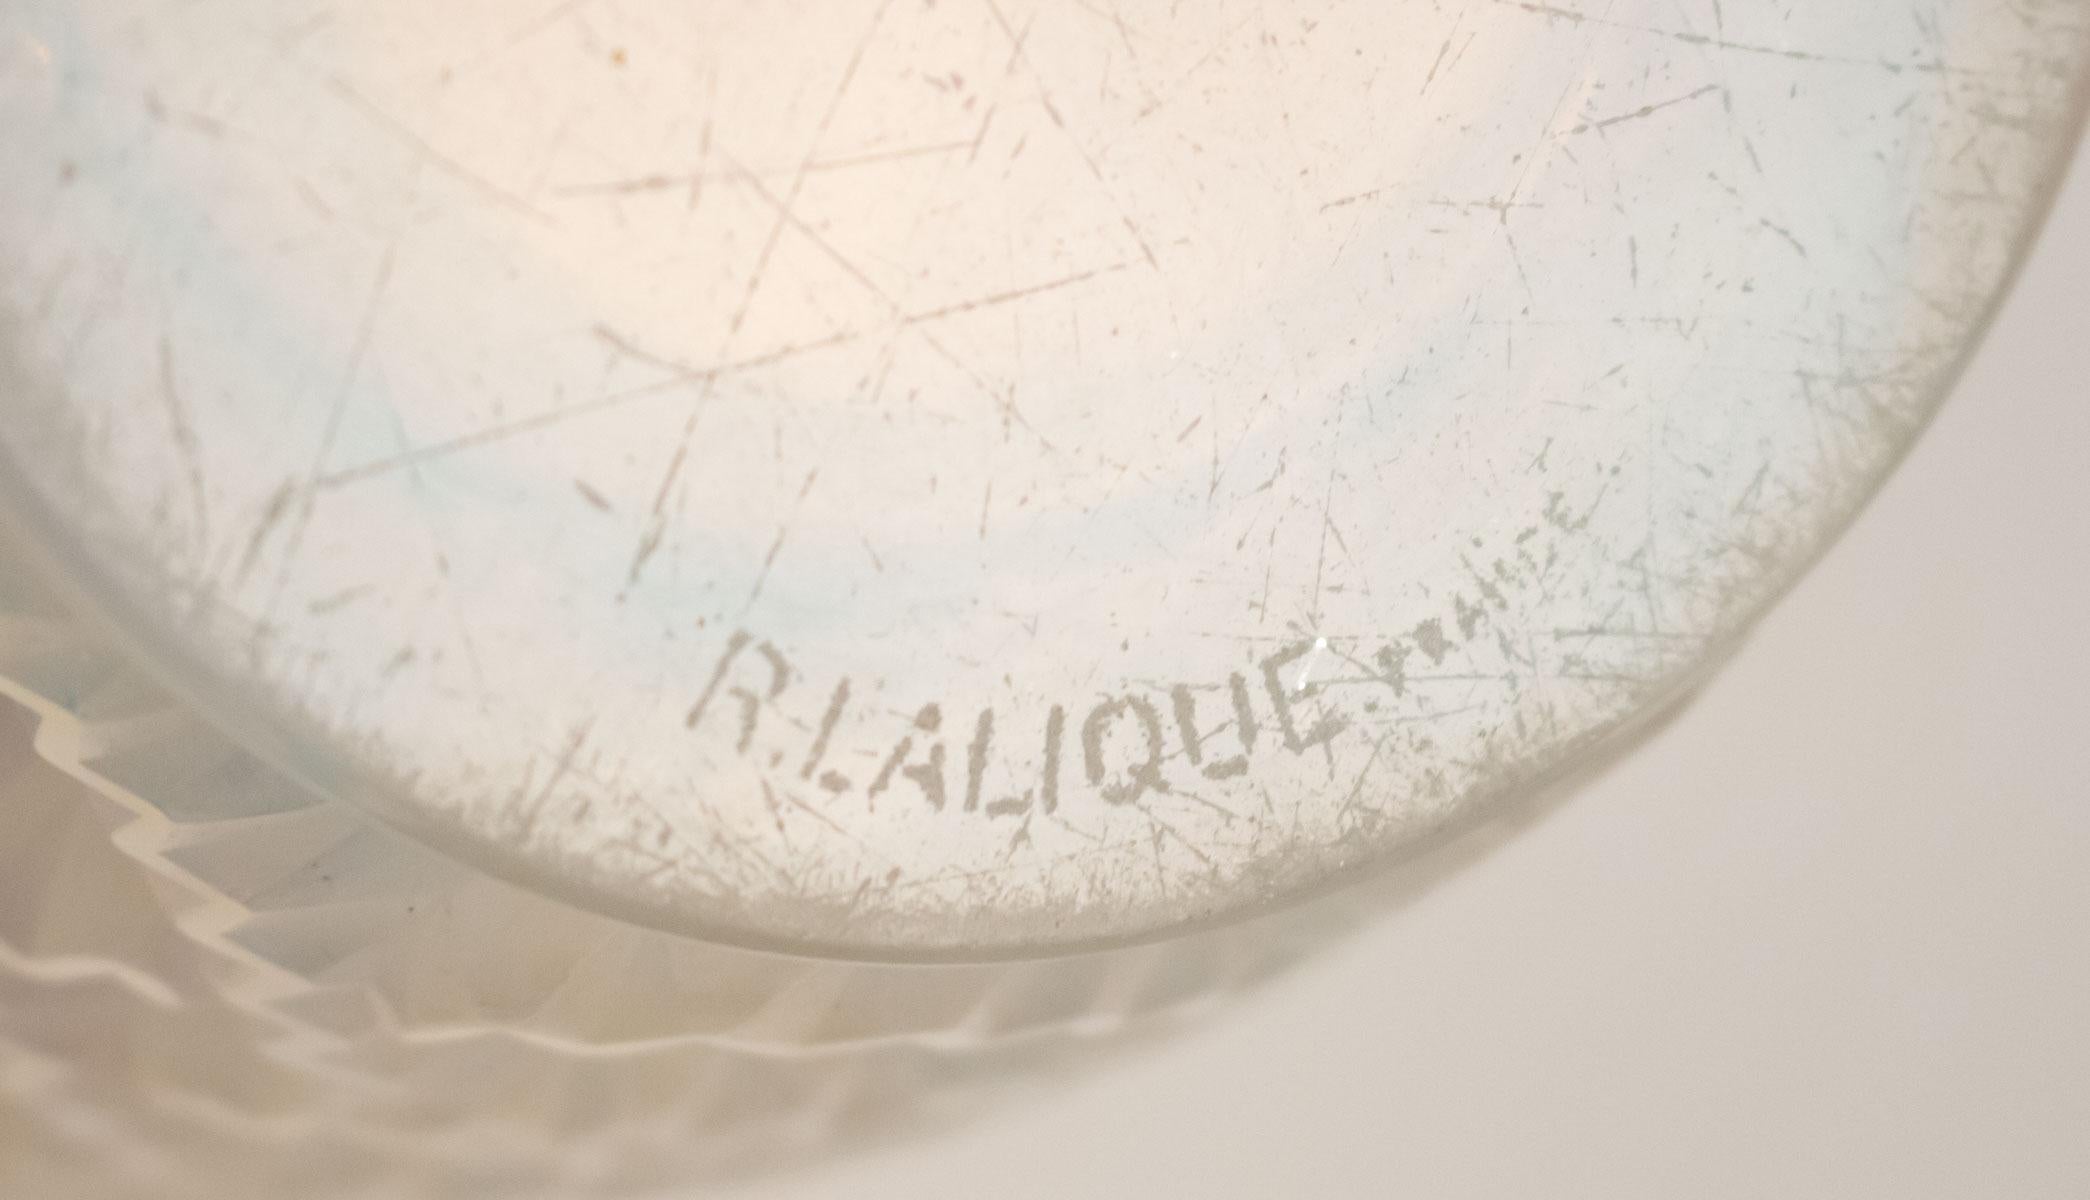 R. Lalique Opalescent 